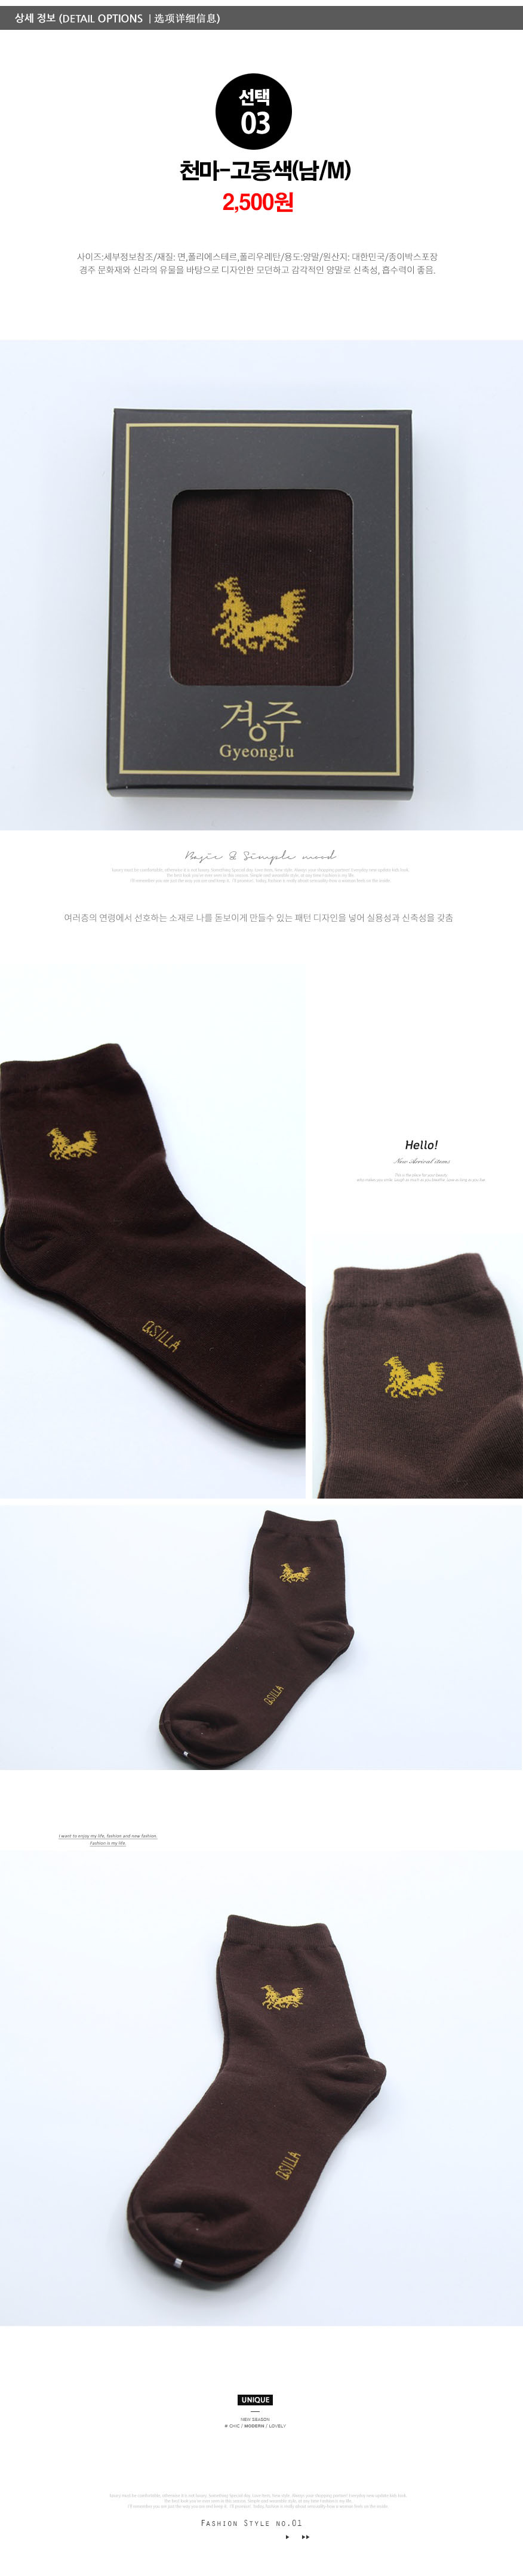 socks_03.jpg